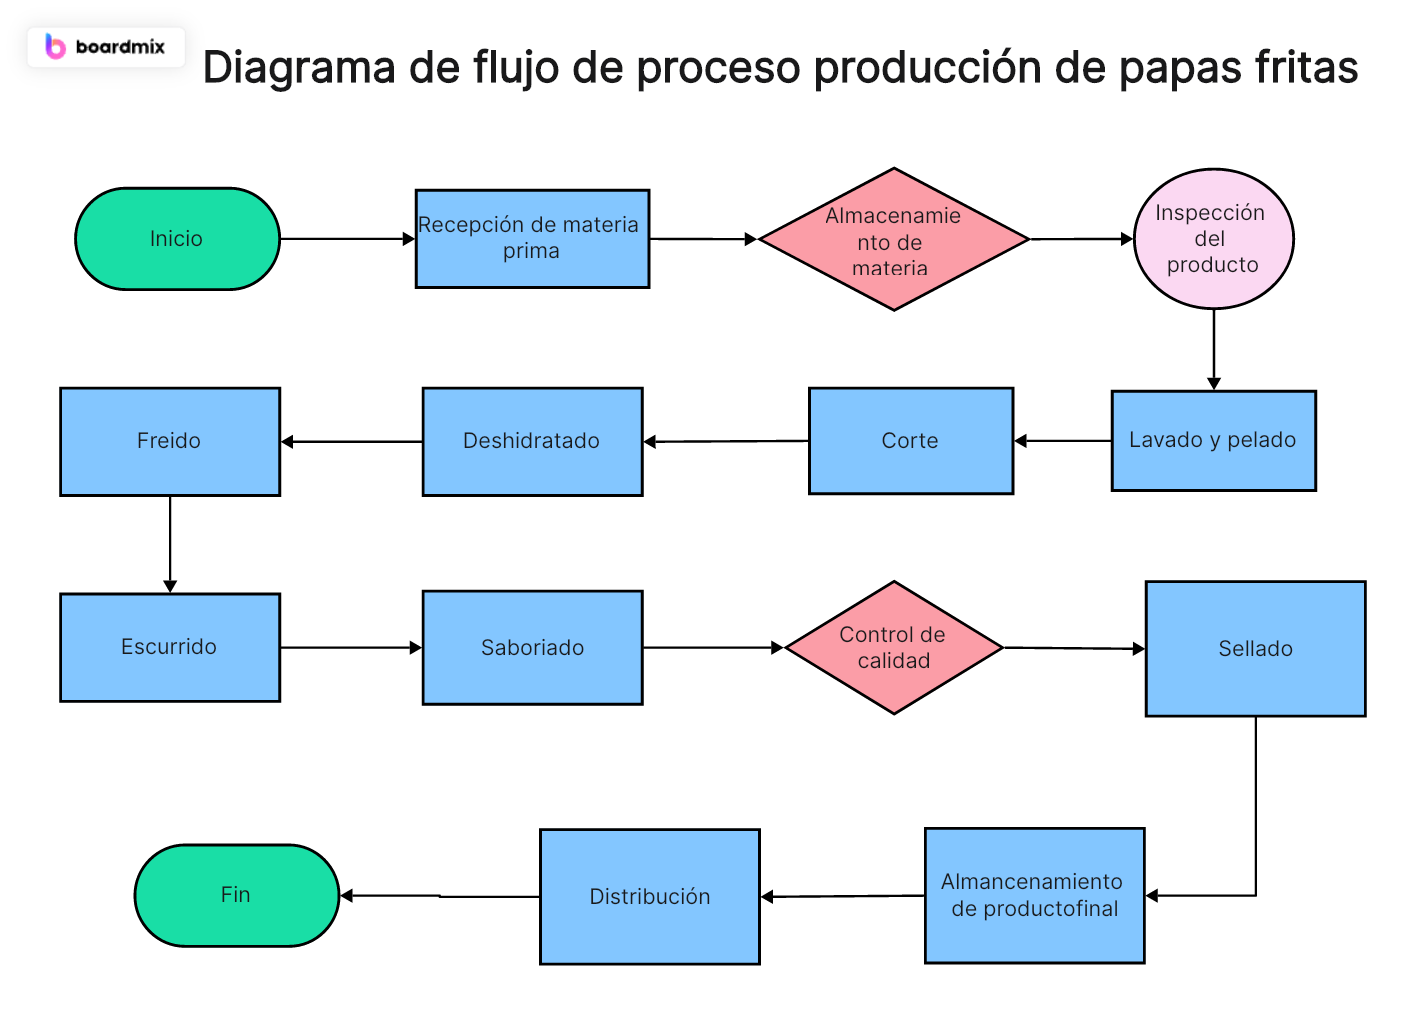 Descubra los diagramas de flujo de proceso de producción y su uso